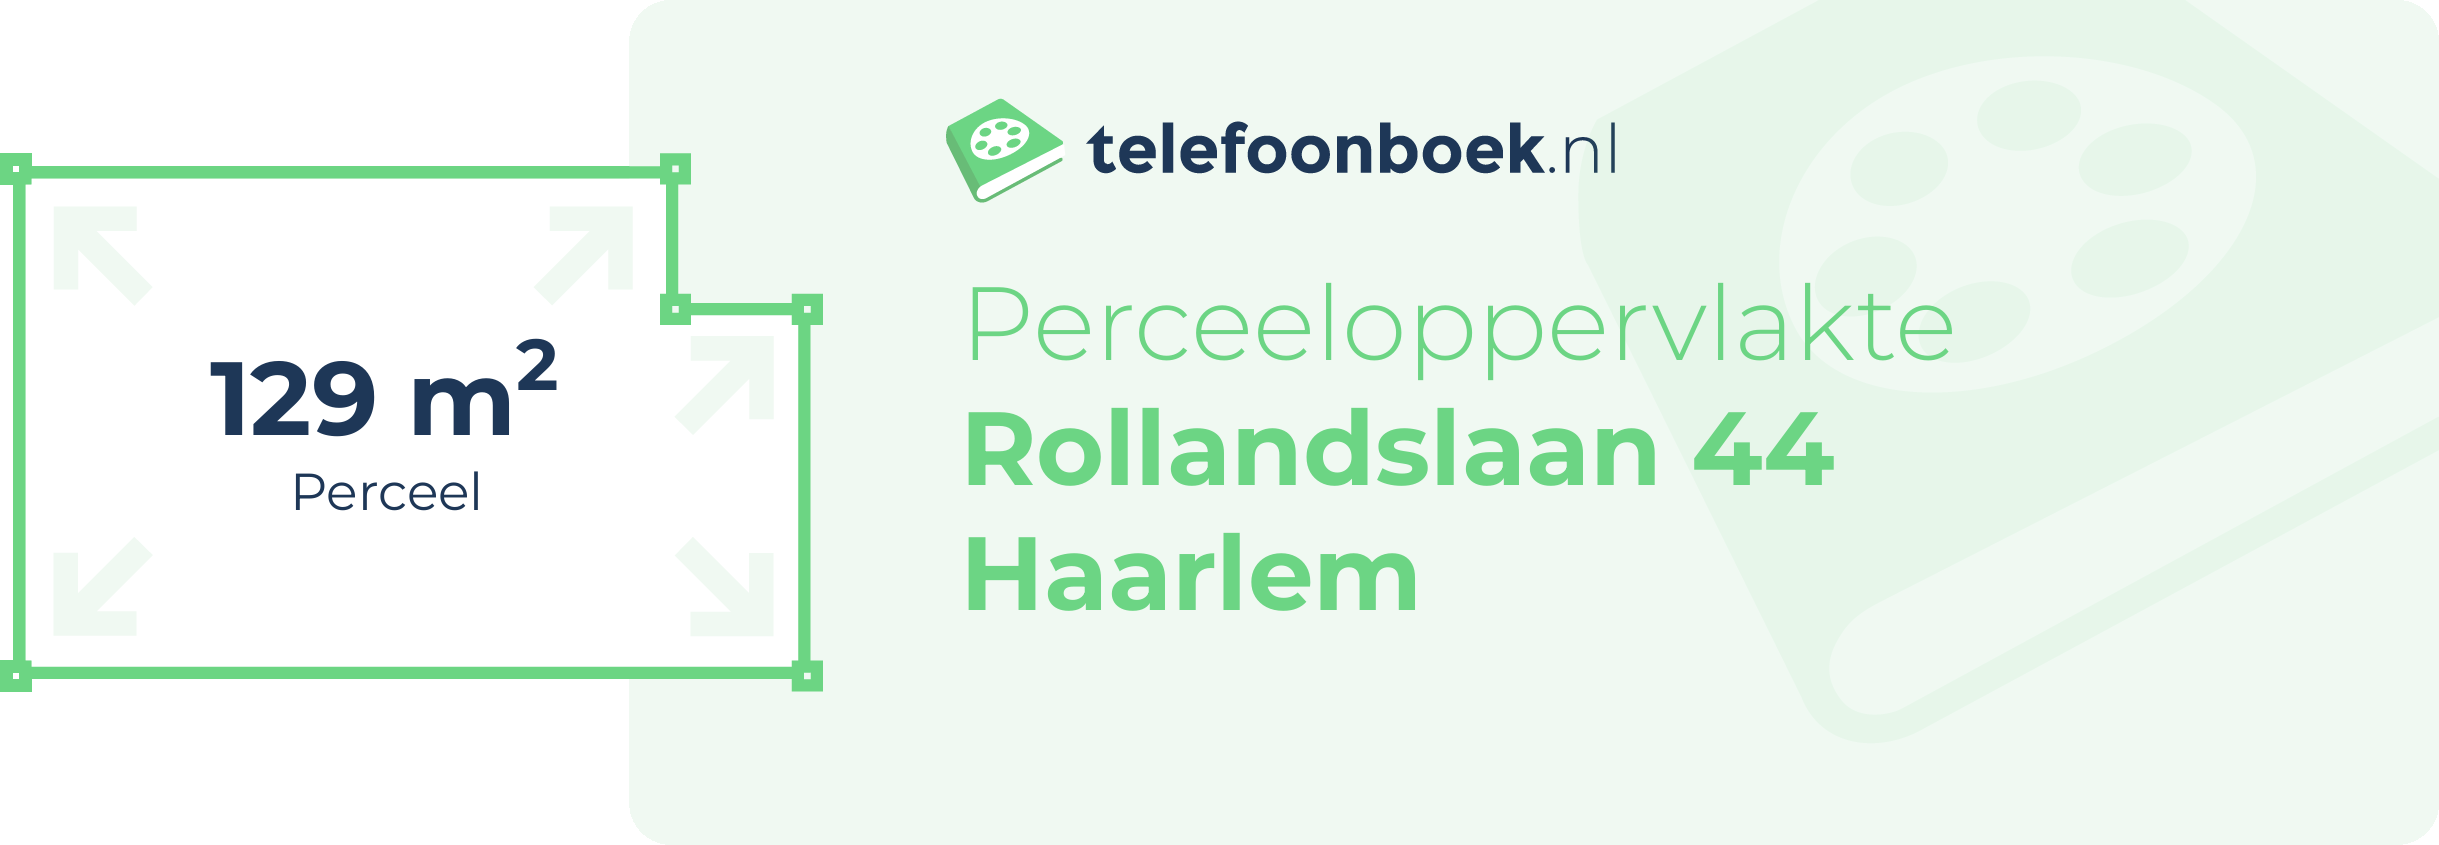 Perceeloppervlakte Rollandslaan 44 Haarlem